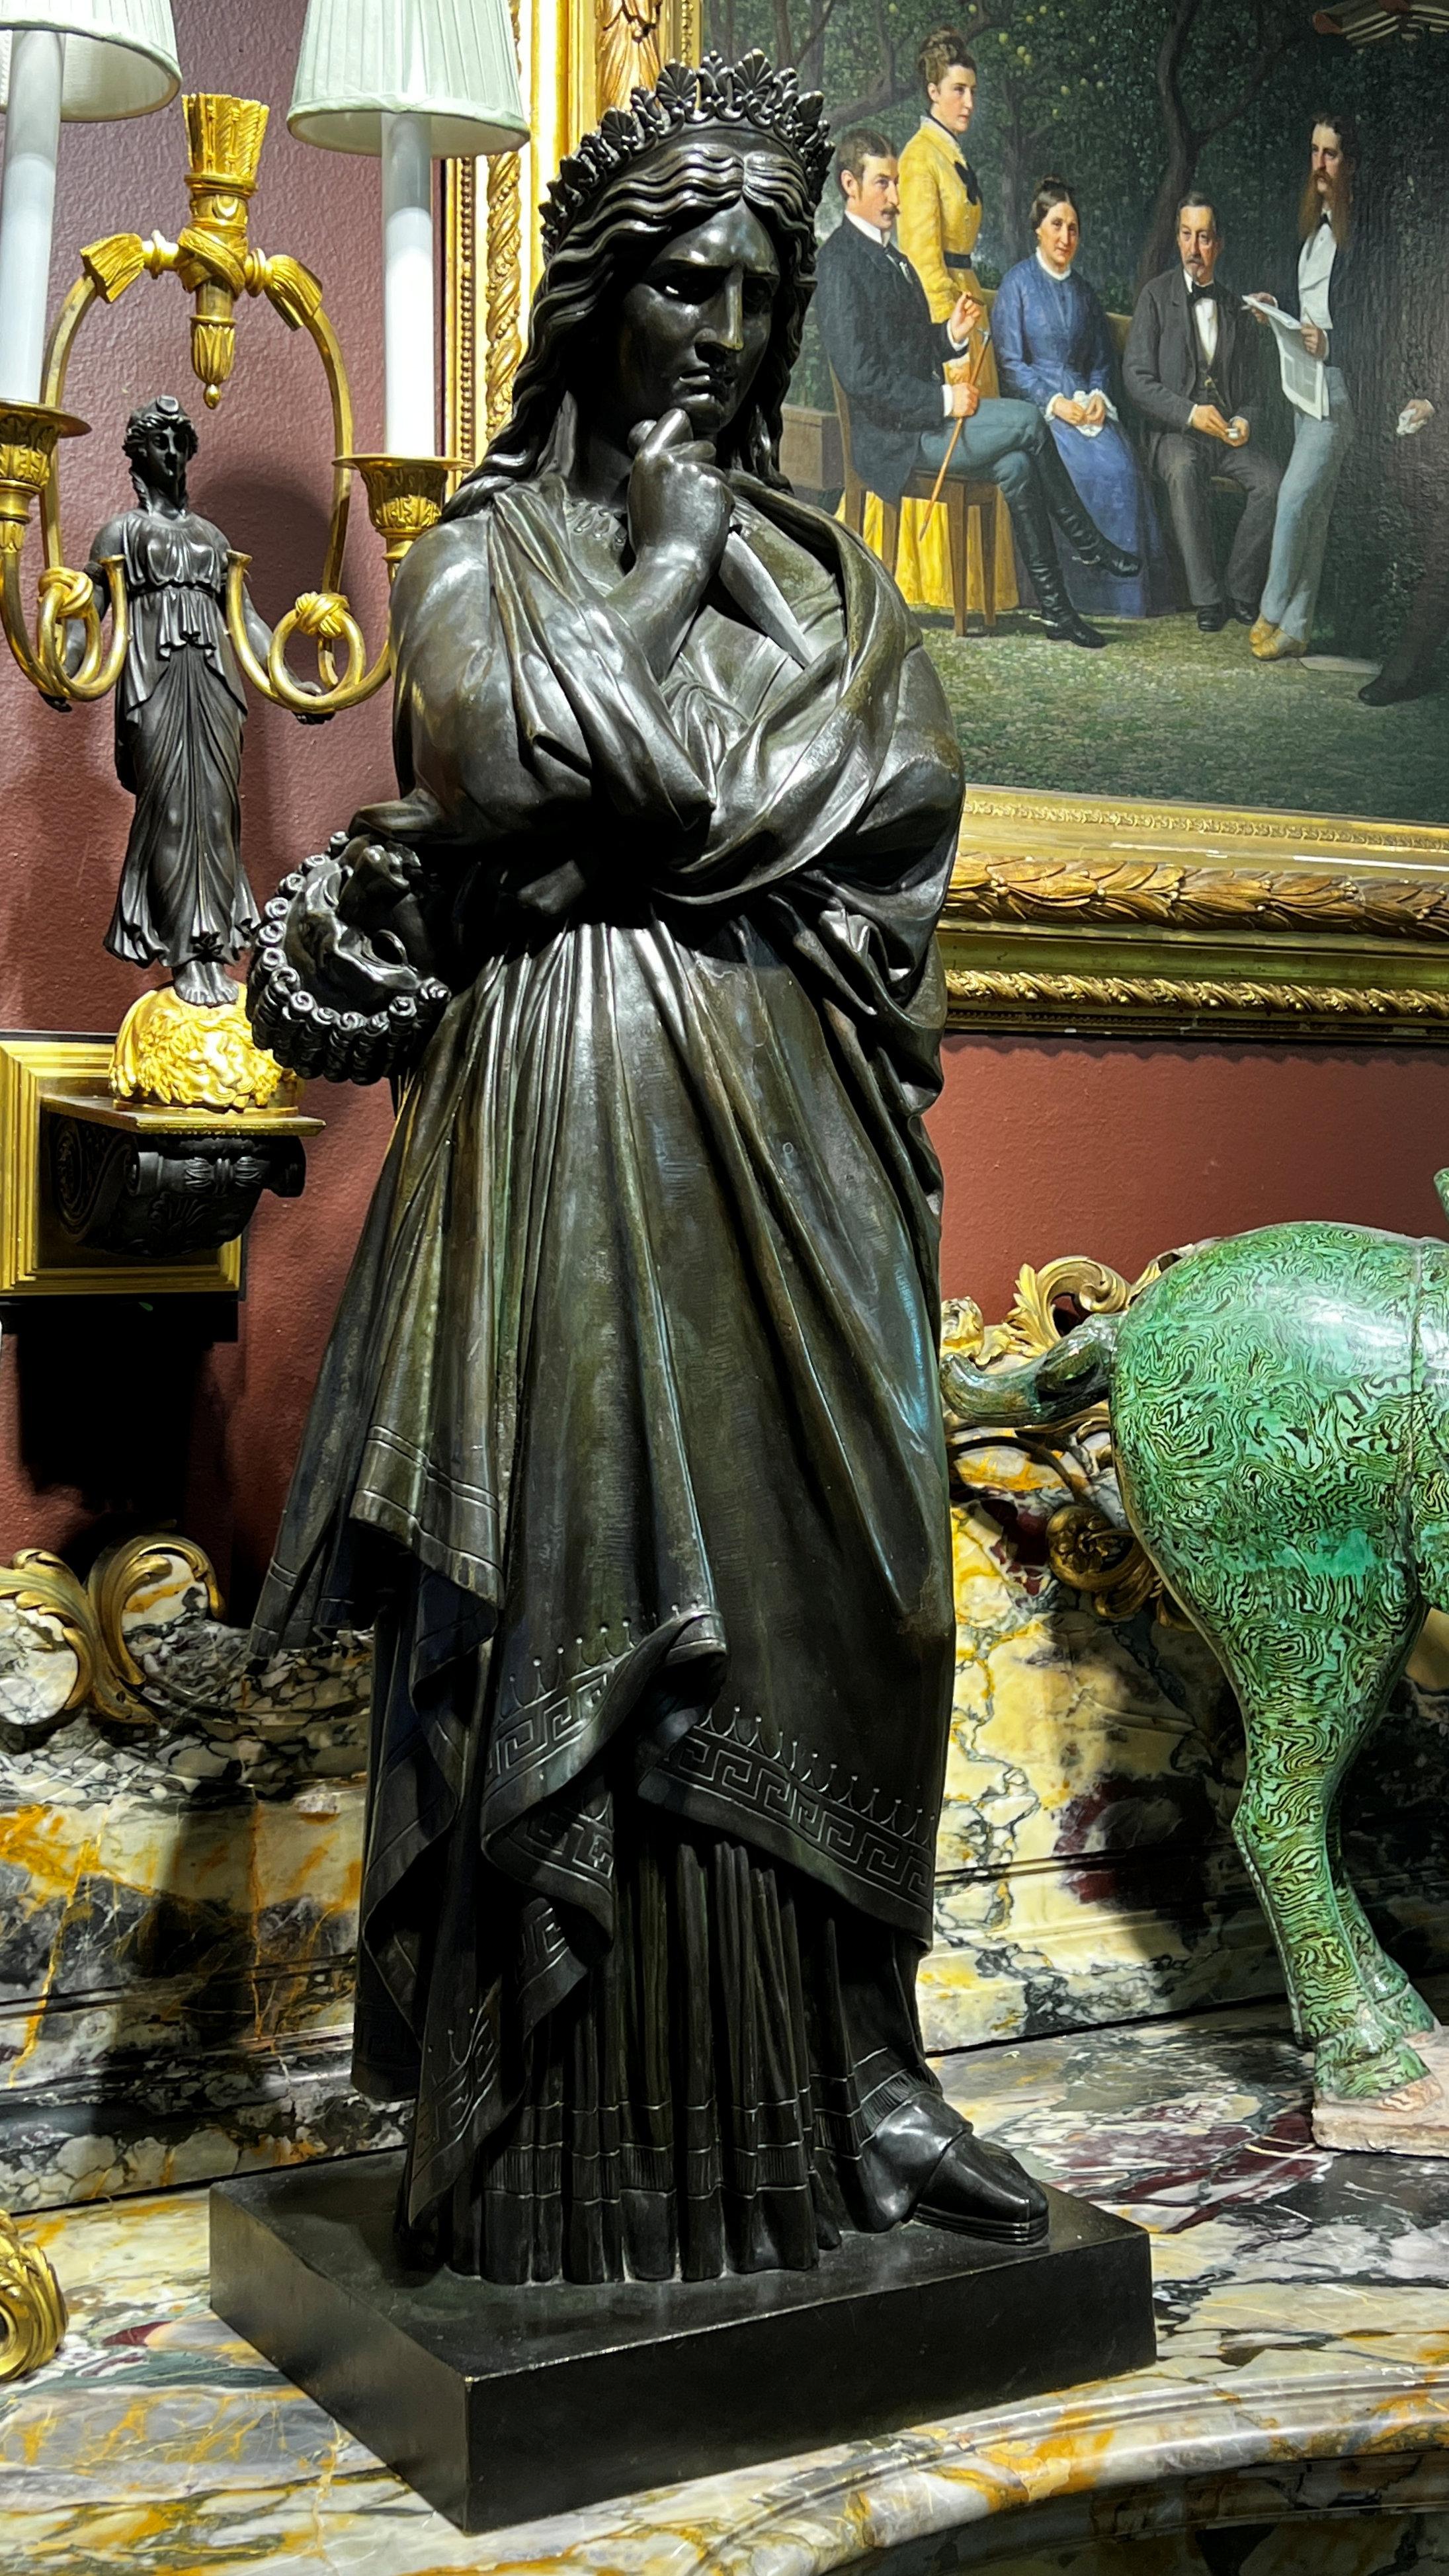 Notre bronze patiné, La Tragédie, d'après le sculpteur français Francisque Duret (1804-1865), mesure 37,5 in (95 cm) et est en bon état, avec une chaude patine brune teintée de vert.

Sculptées à l'origine dans le marbre, La Tragédie et La Comédie